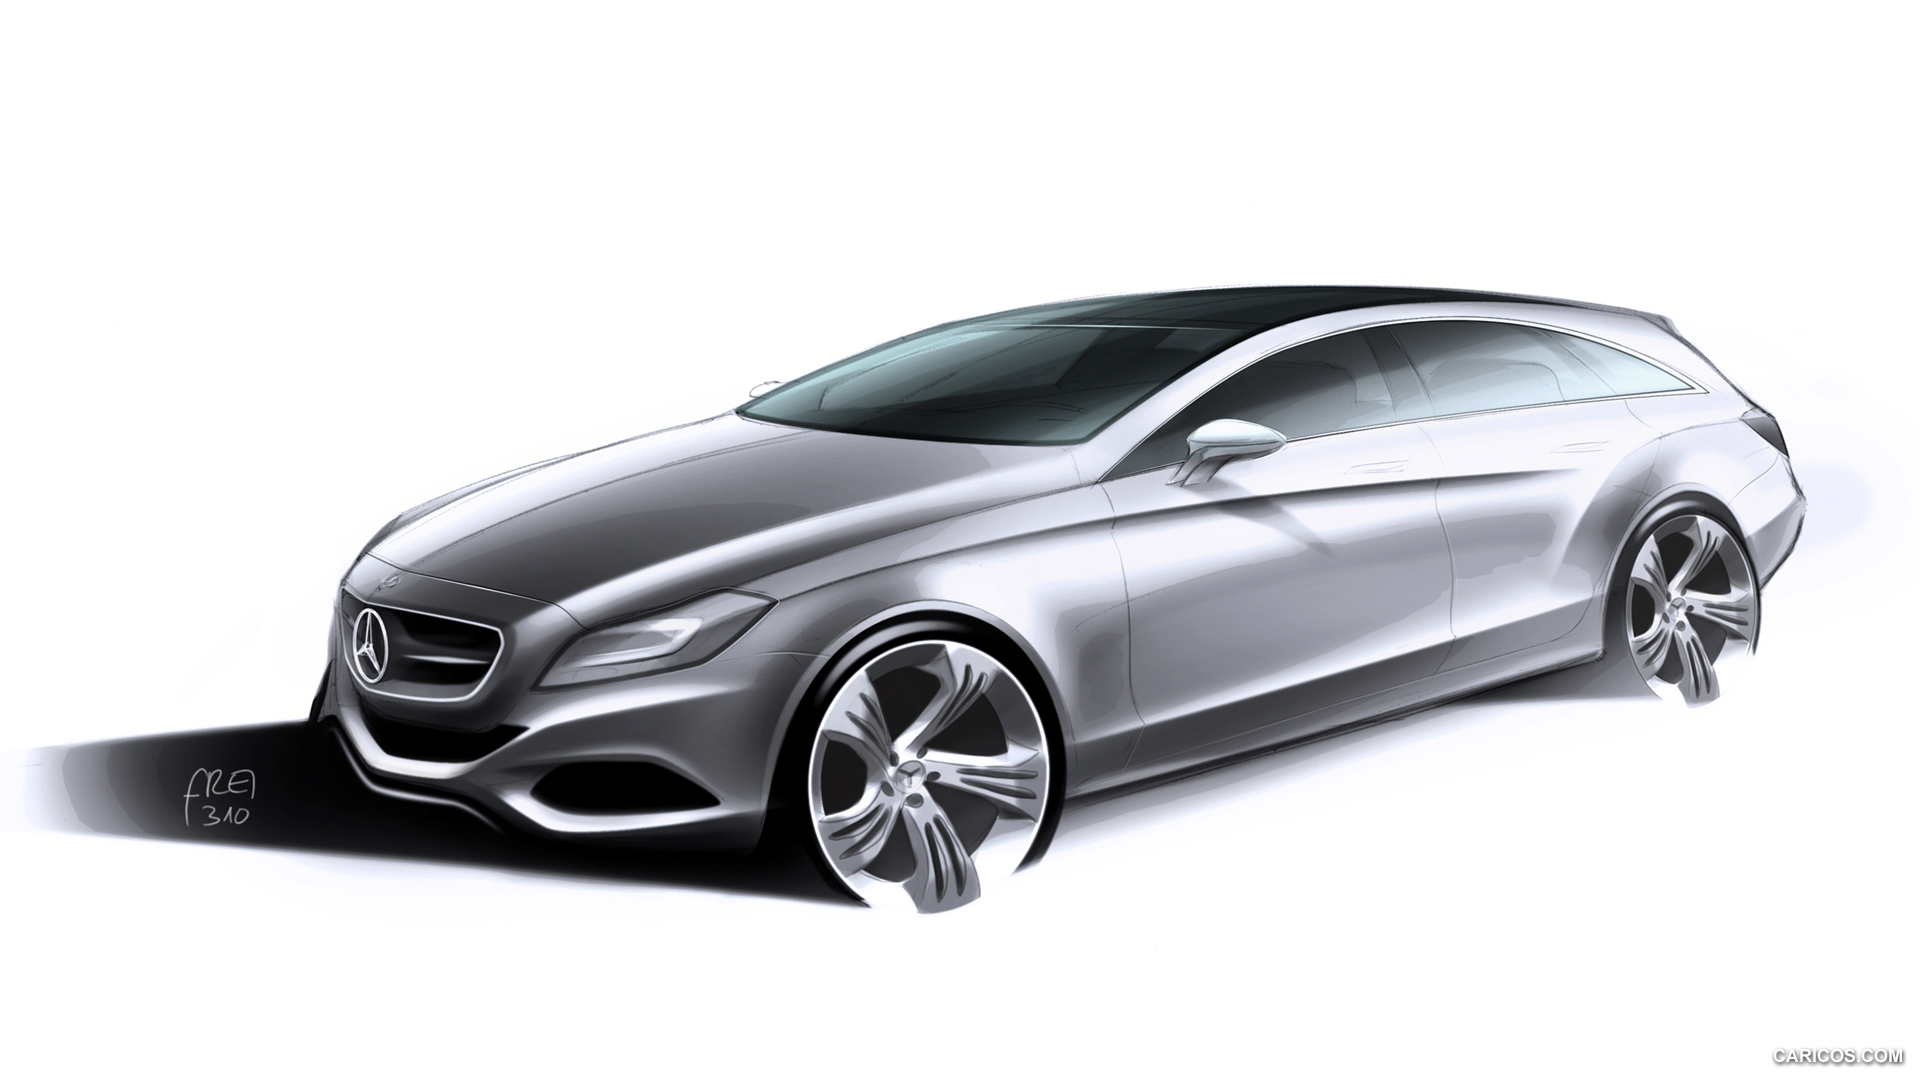 2013 Mercedes-Benz CLS Shooting Brake - Design Sketch, #138 of 184